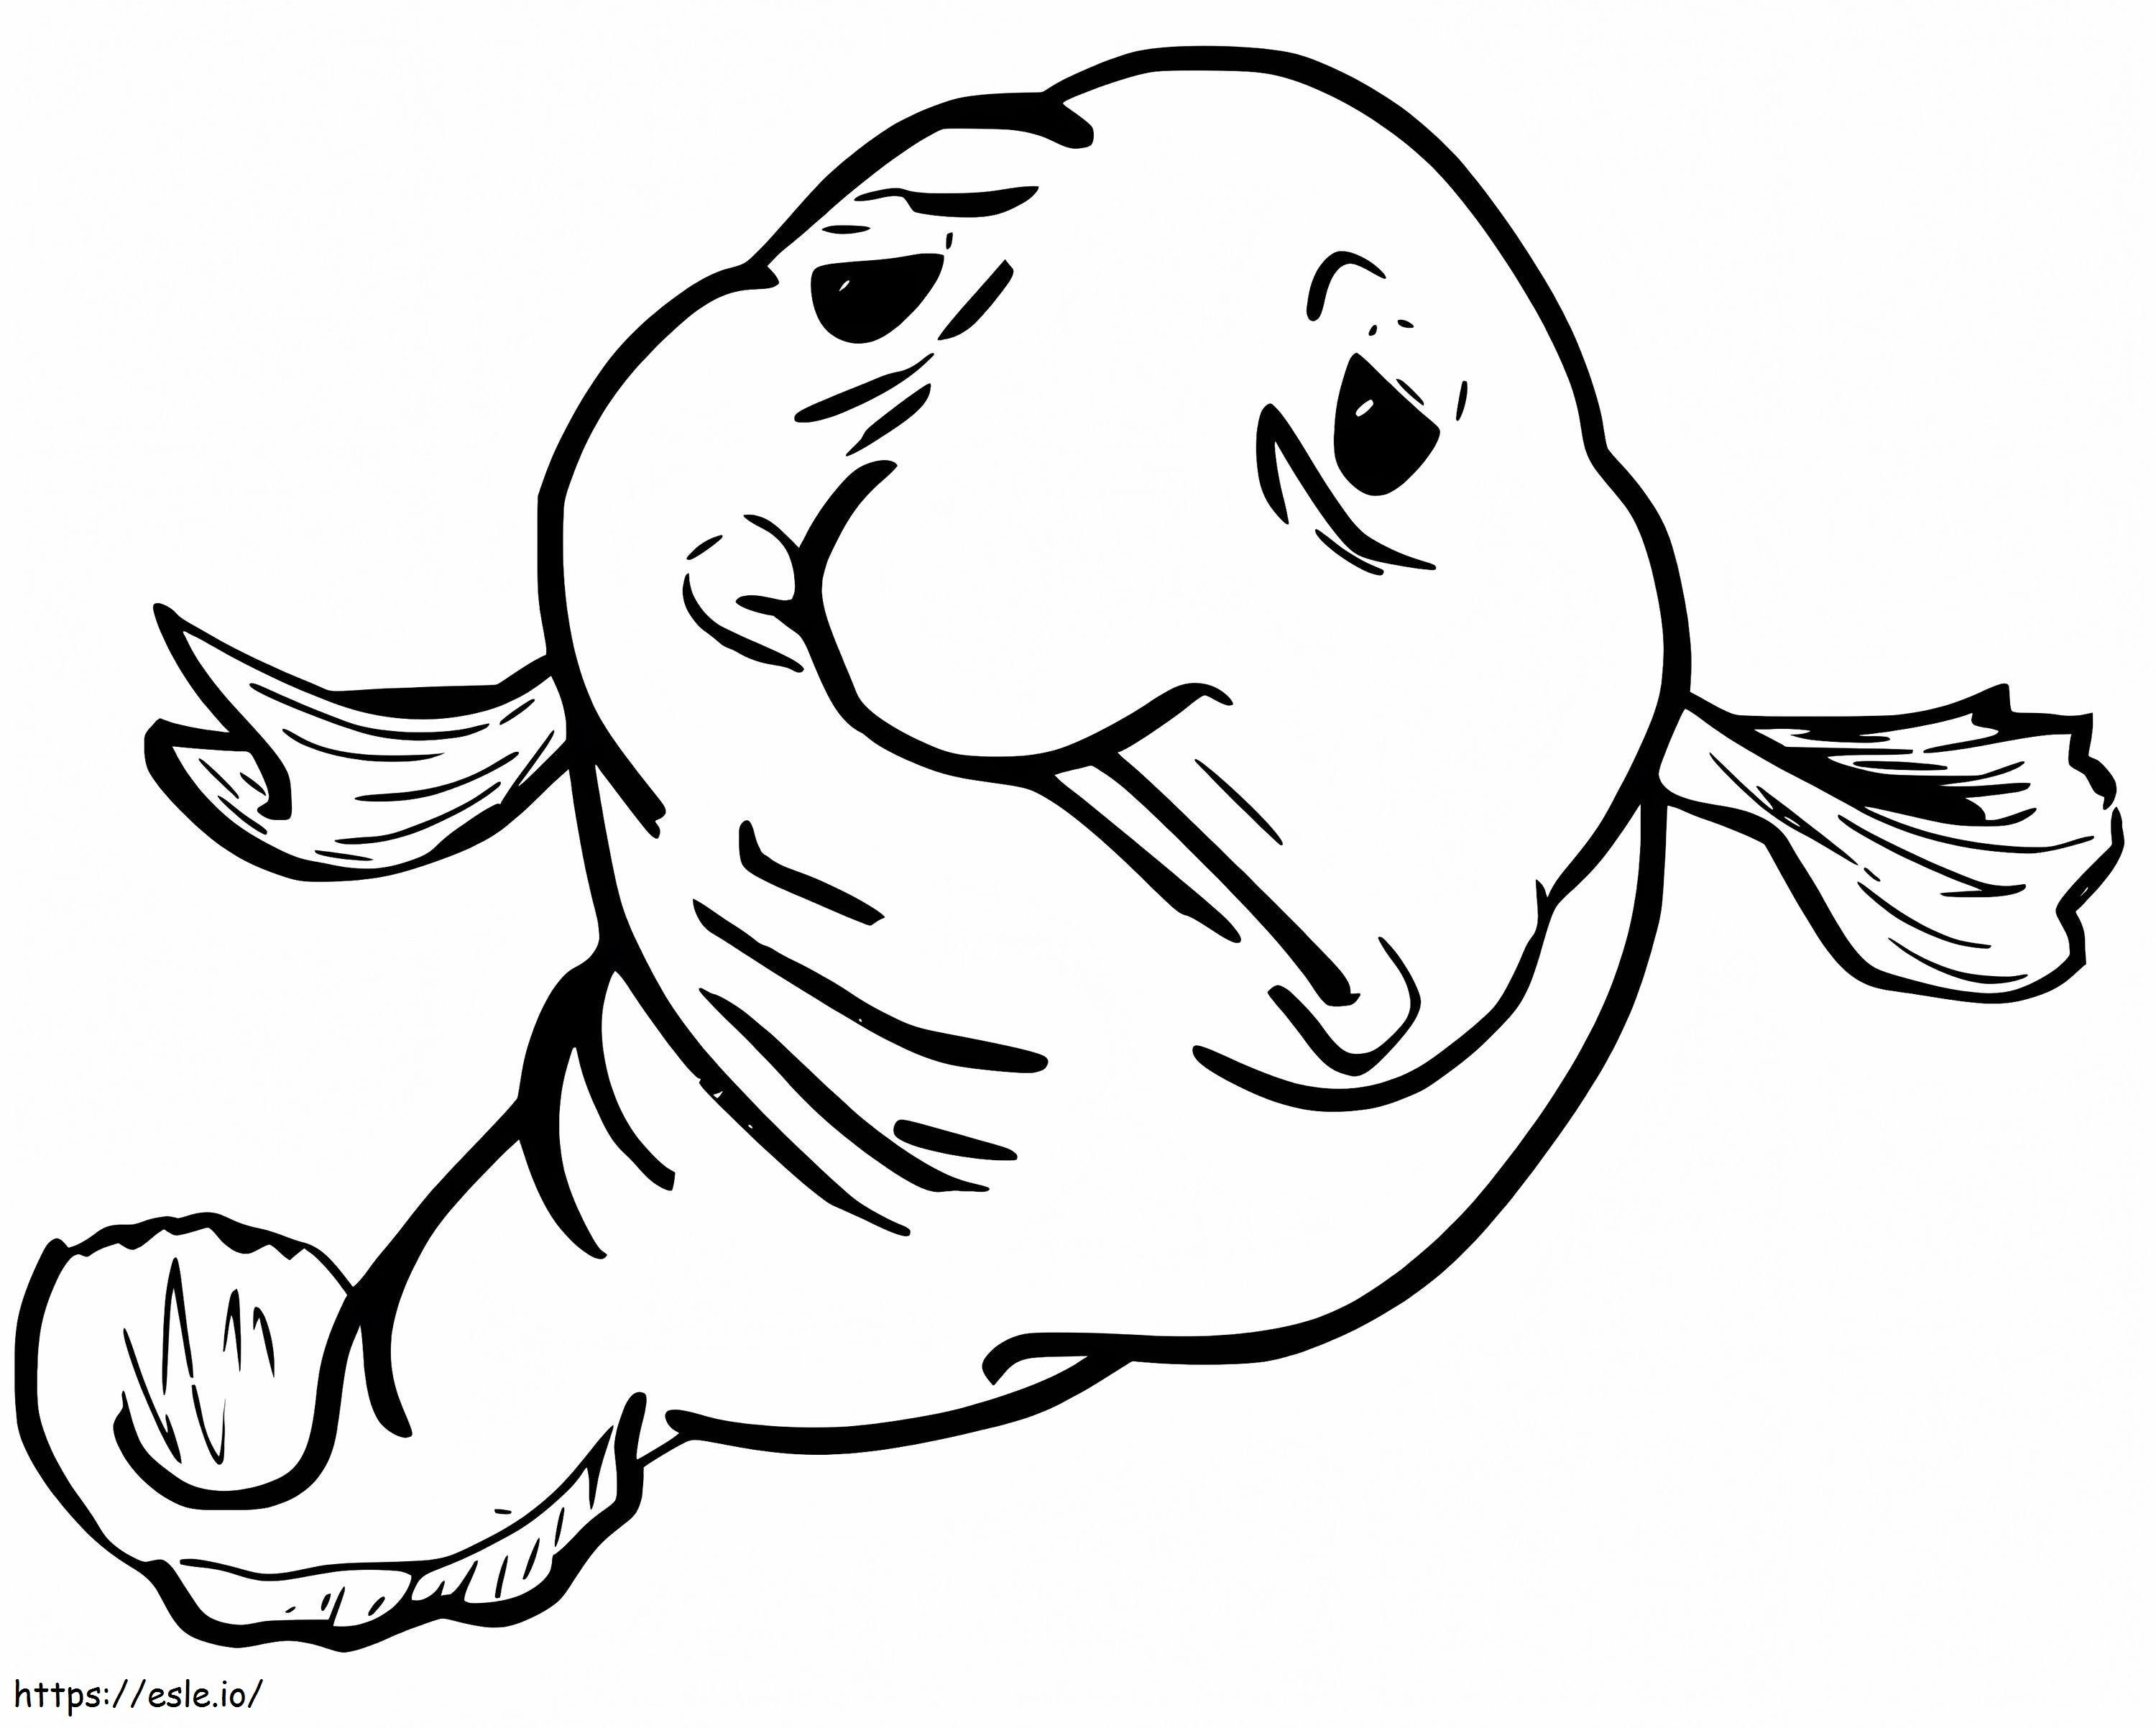 Sad Blobfish coloring page